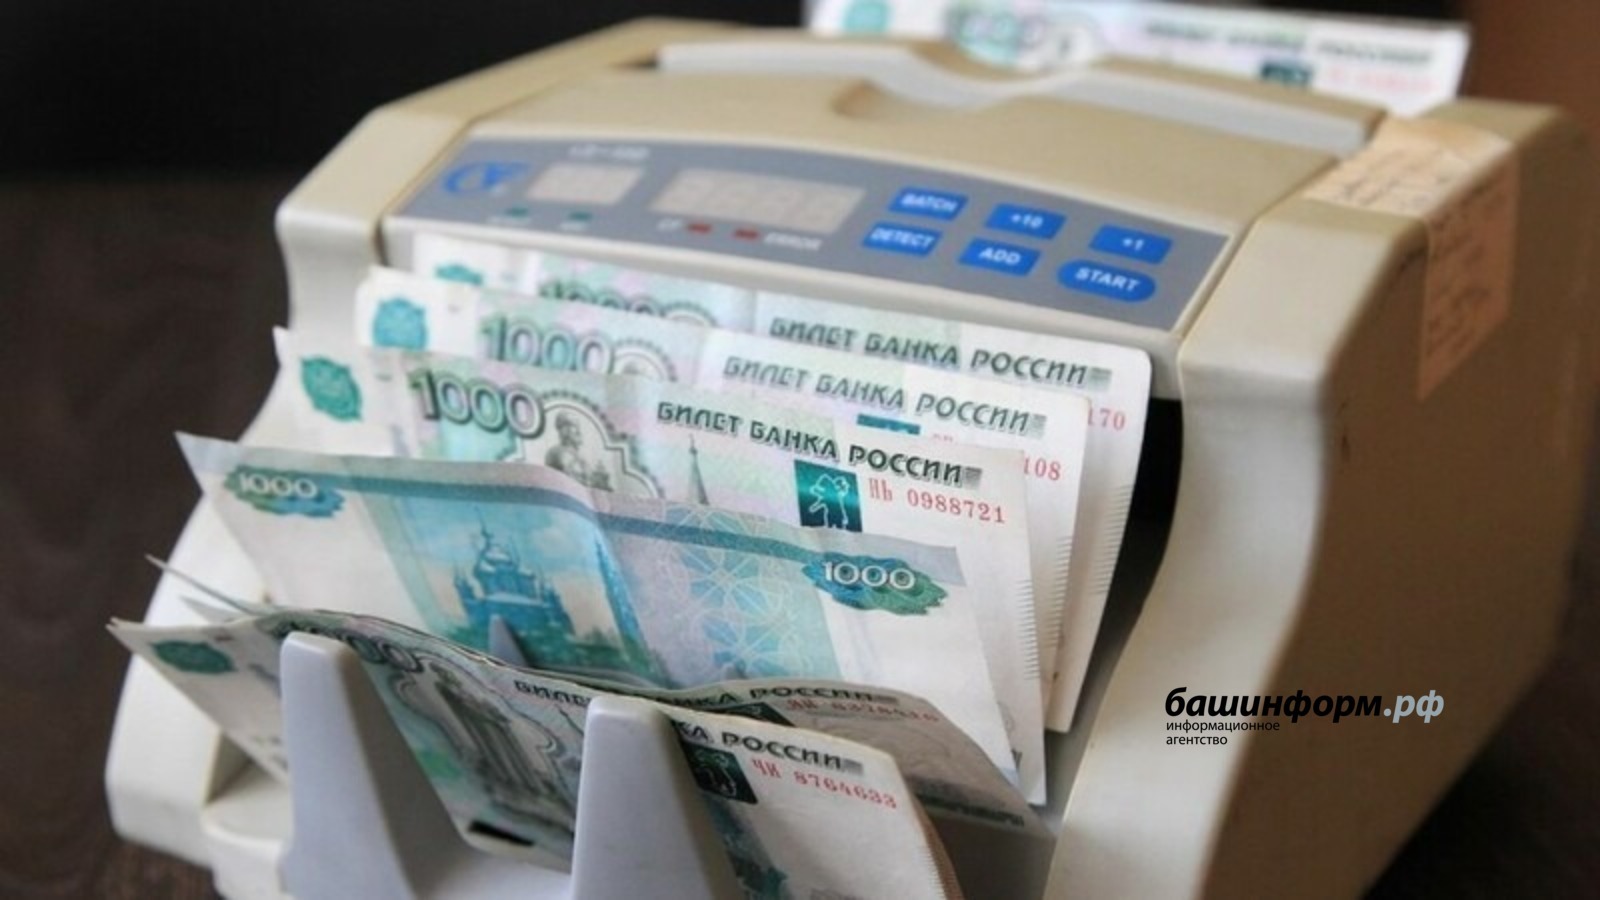 Чистая прибыль крупного бизнеса Башкирии в январе-июне выросла на 50%